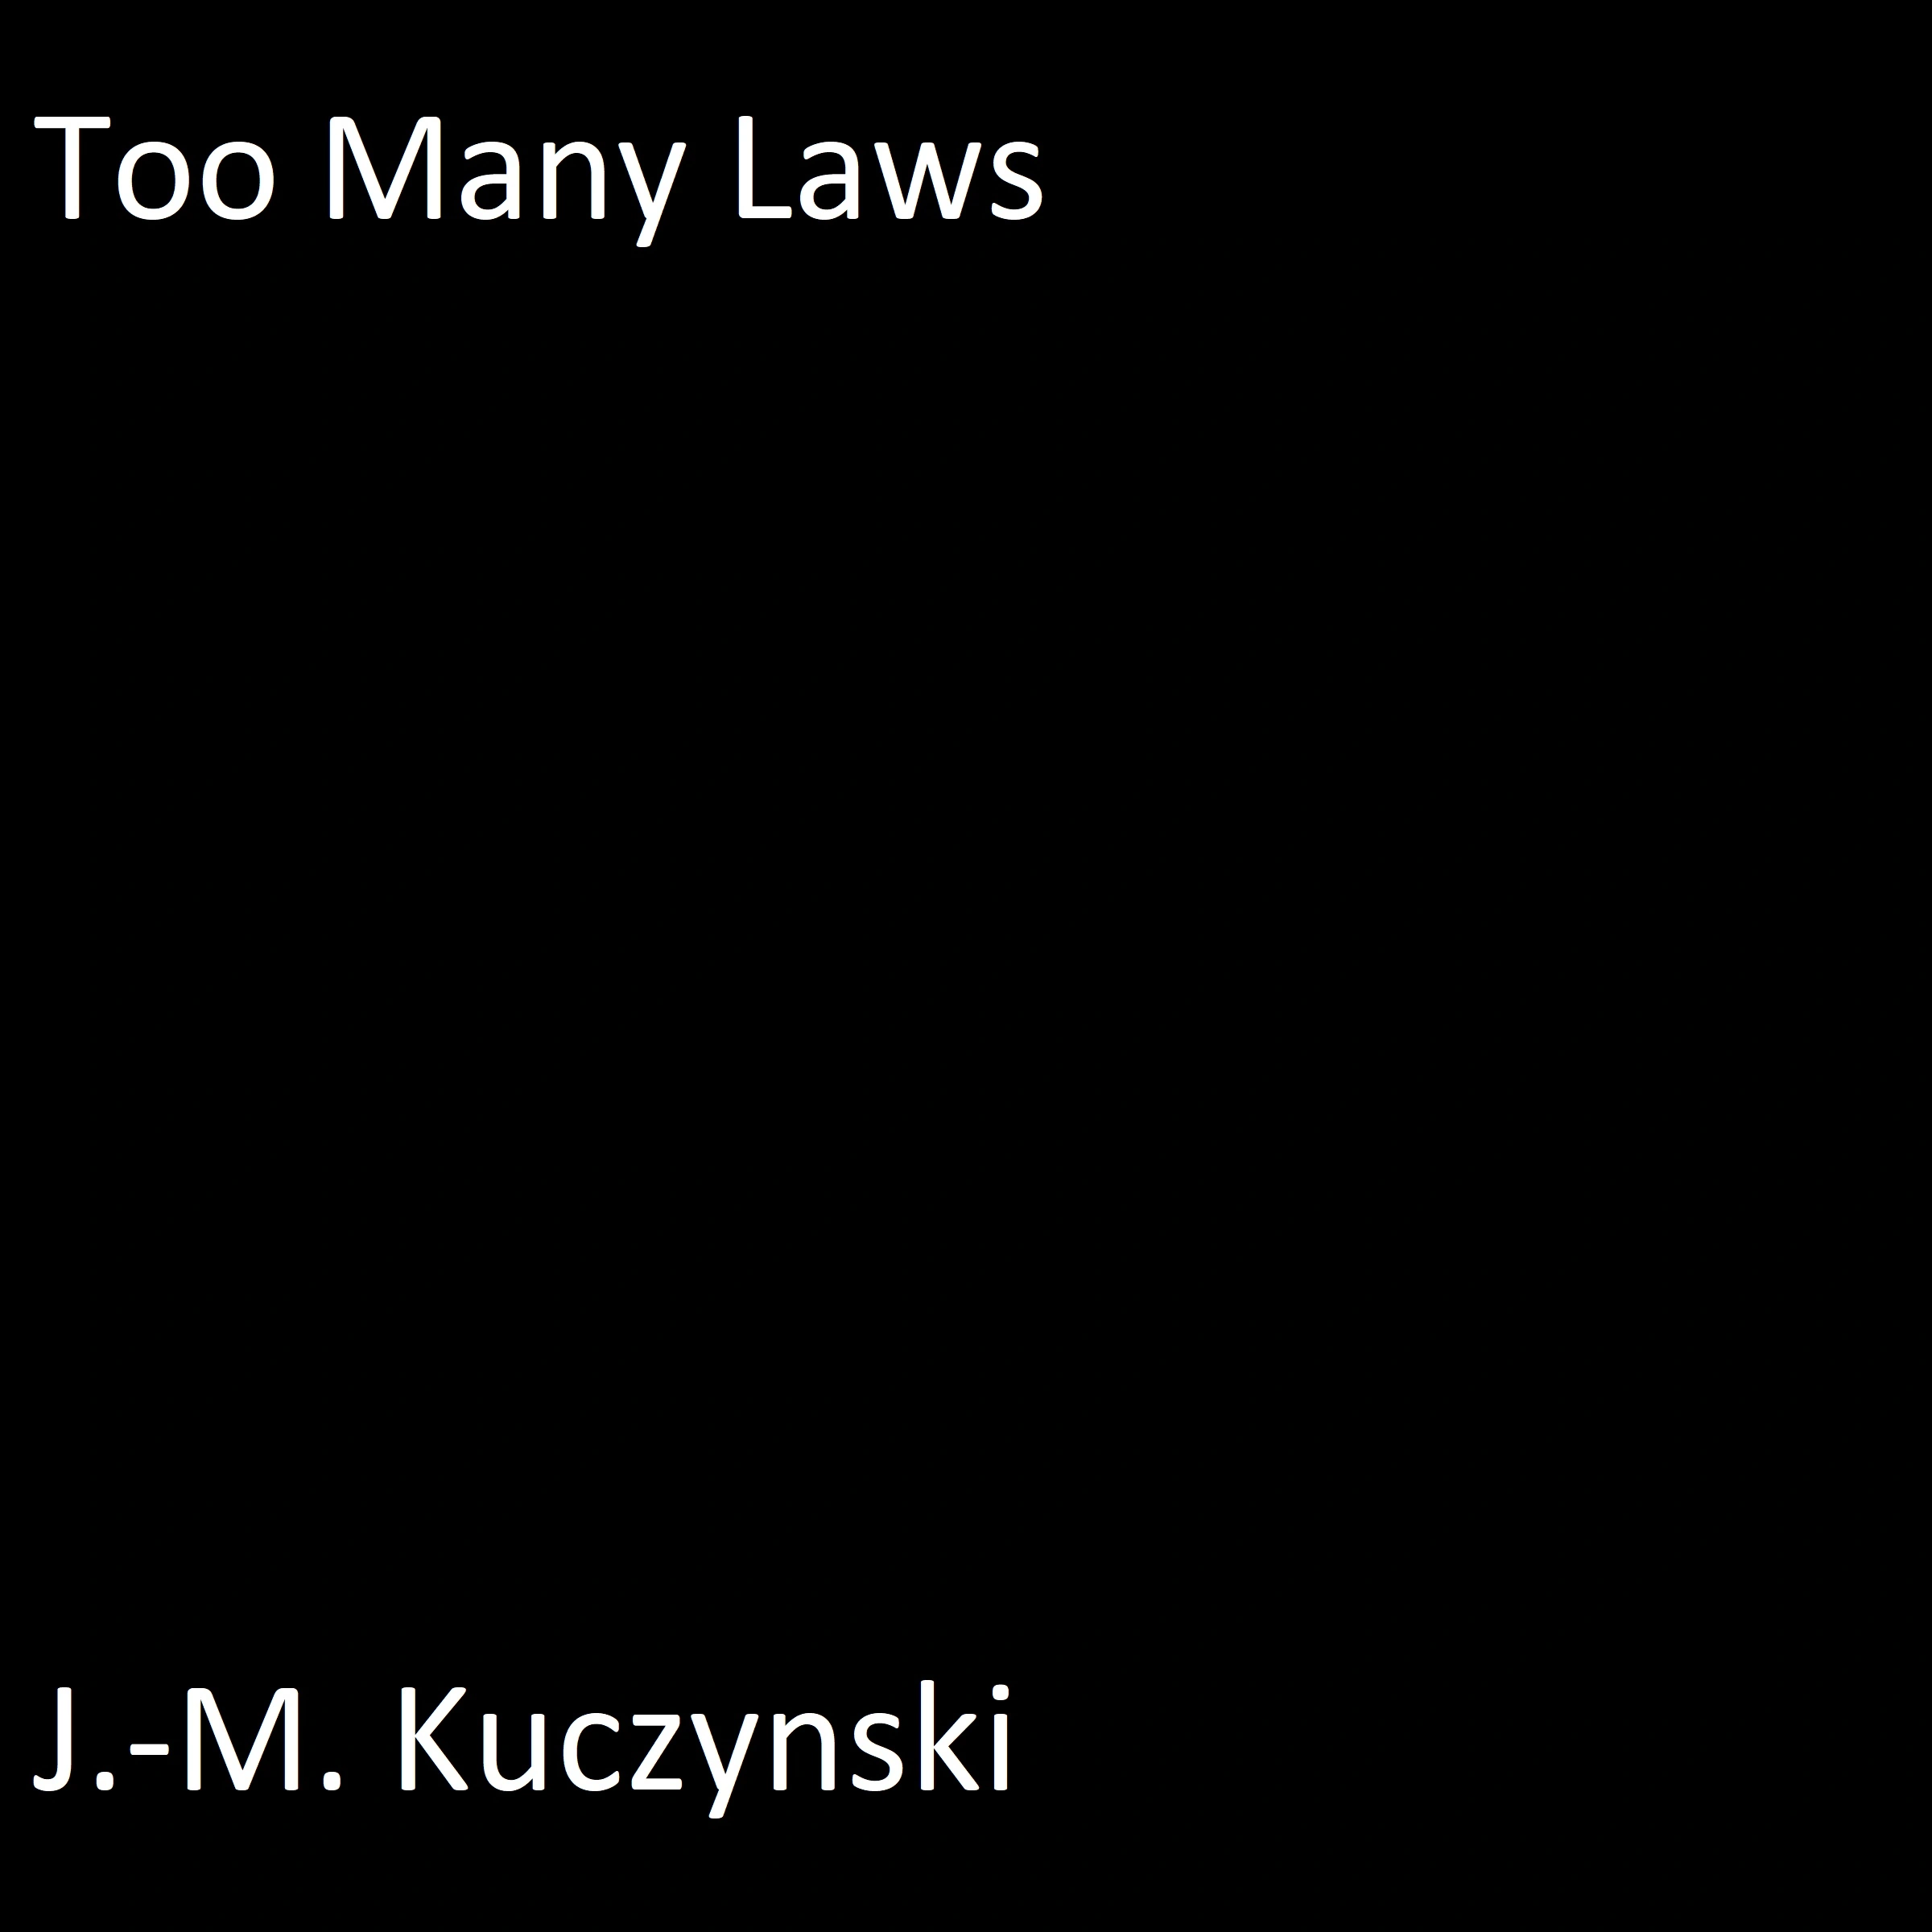 Too Many Laws Audiobook by J.-M. Kuczynski